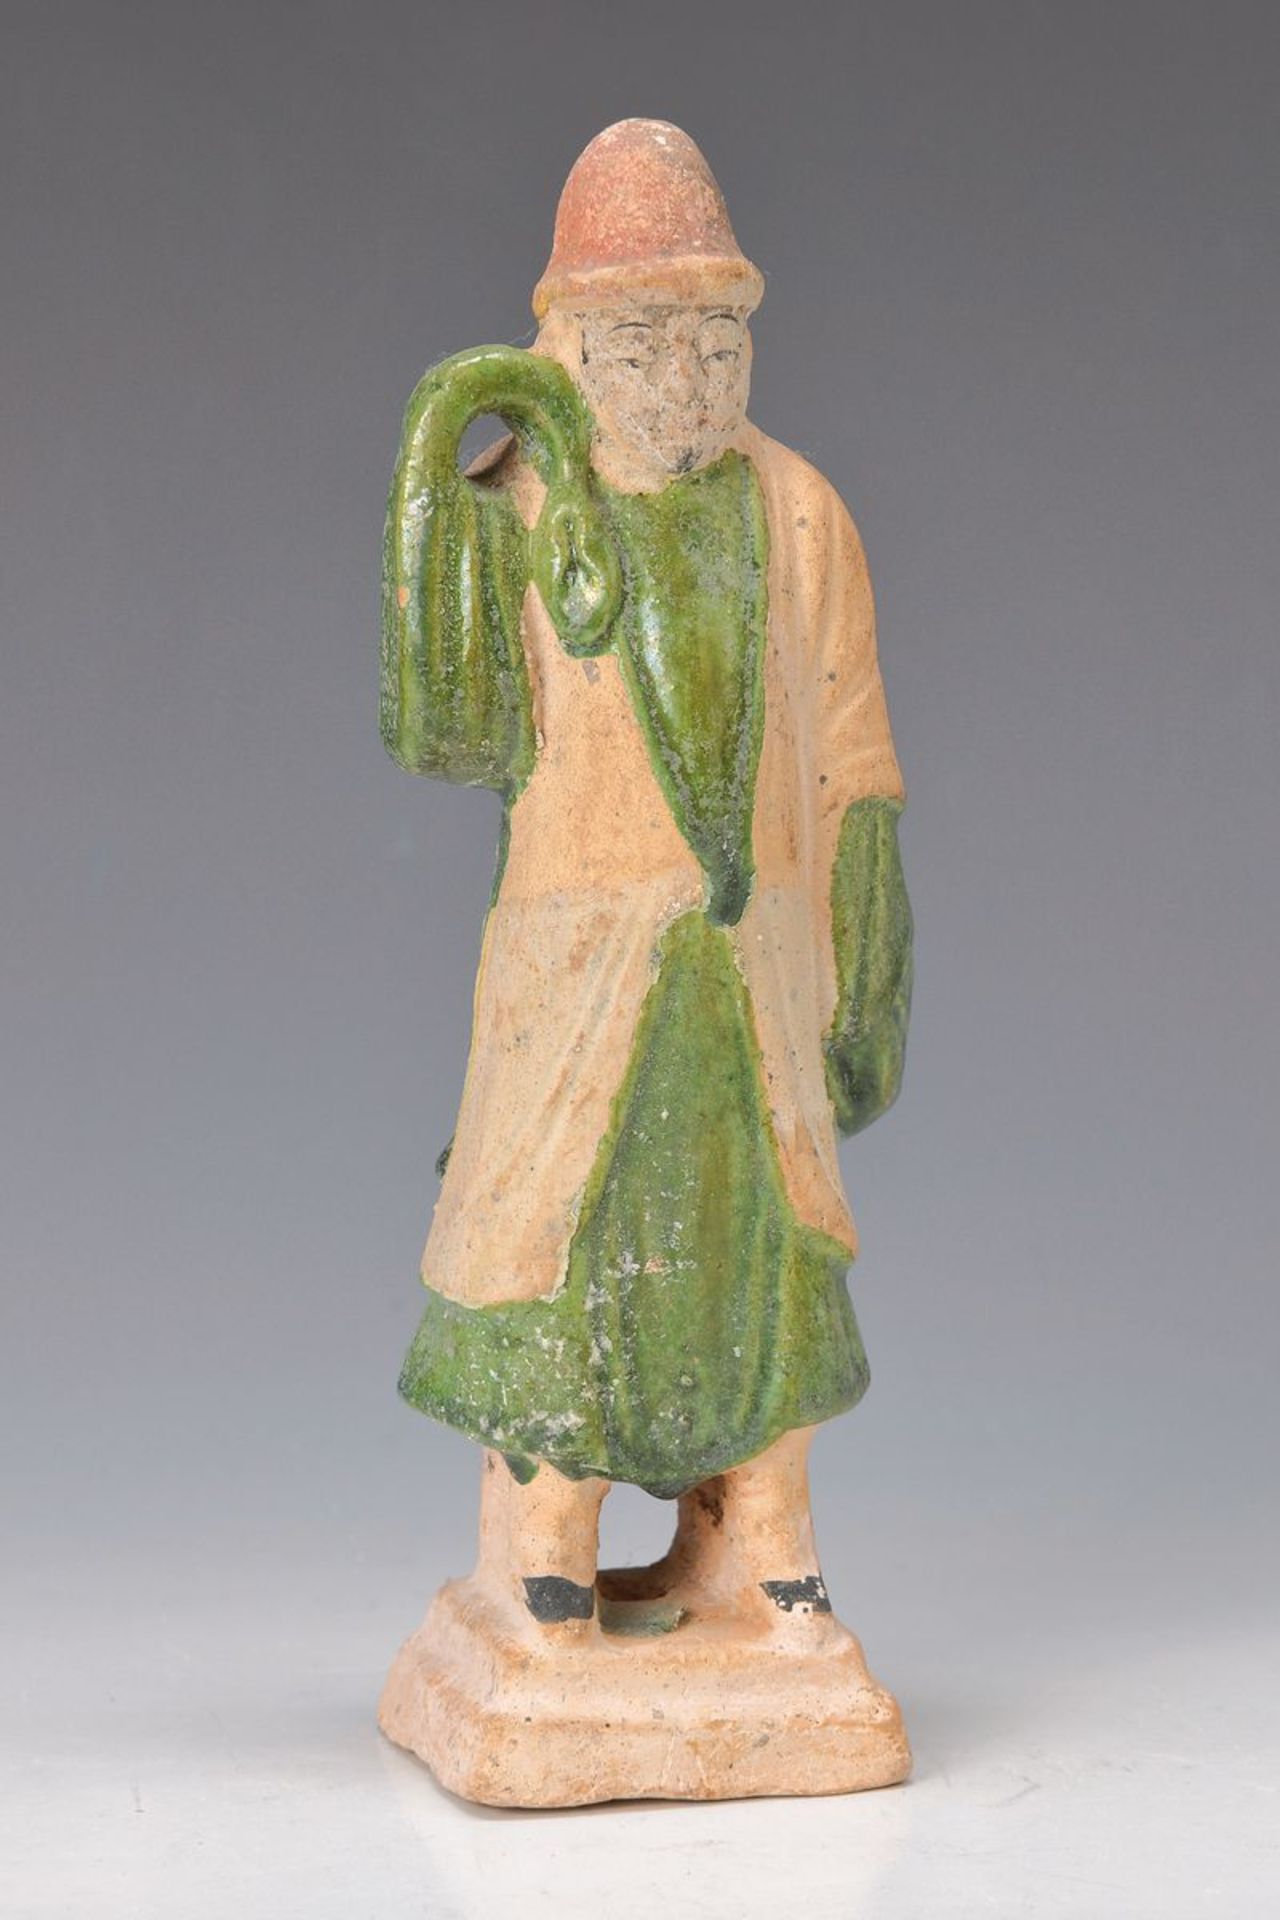 Würdenträger Figur, China, Han-Zeit, ca. 2000 Jahre alt, Keramik, gelblich-grauer Scherben mit